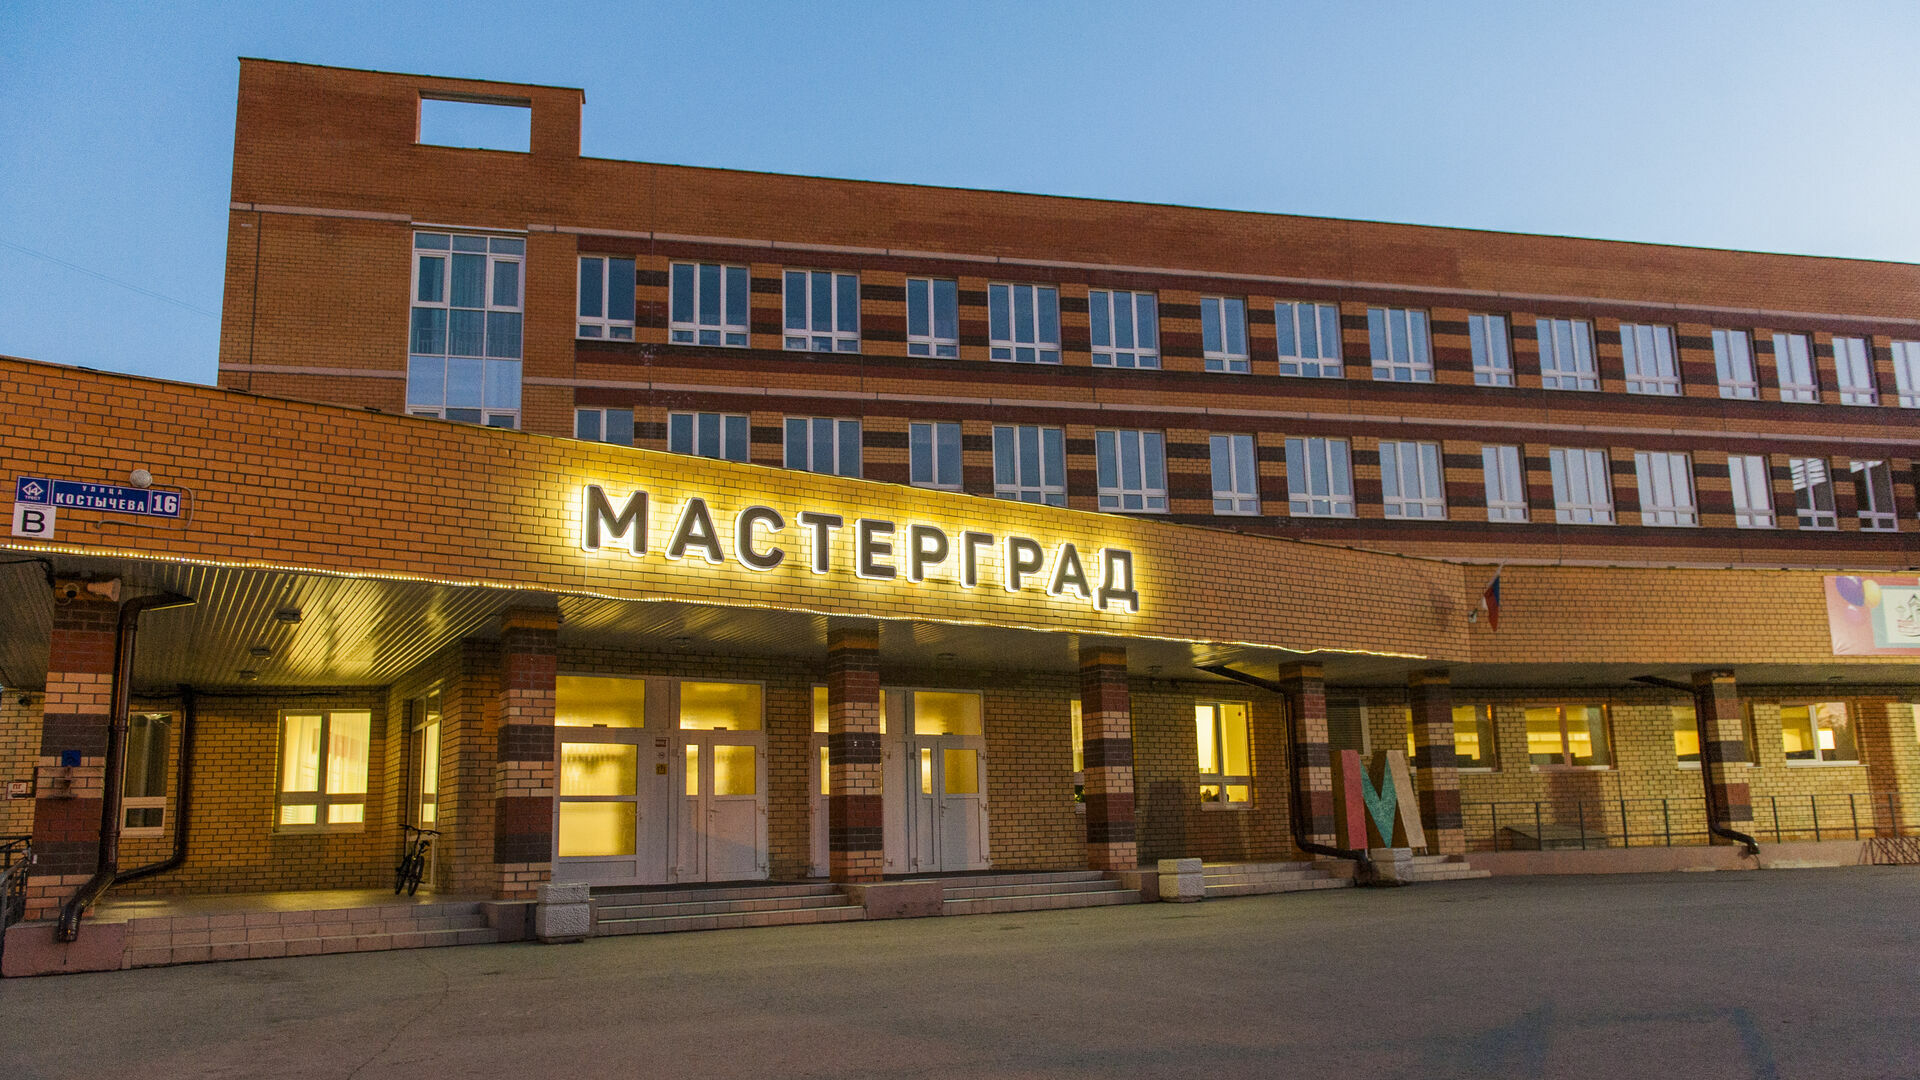 ПЗСП отказался от строительства дома напротив школы «Мастерград»